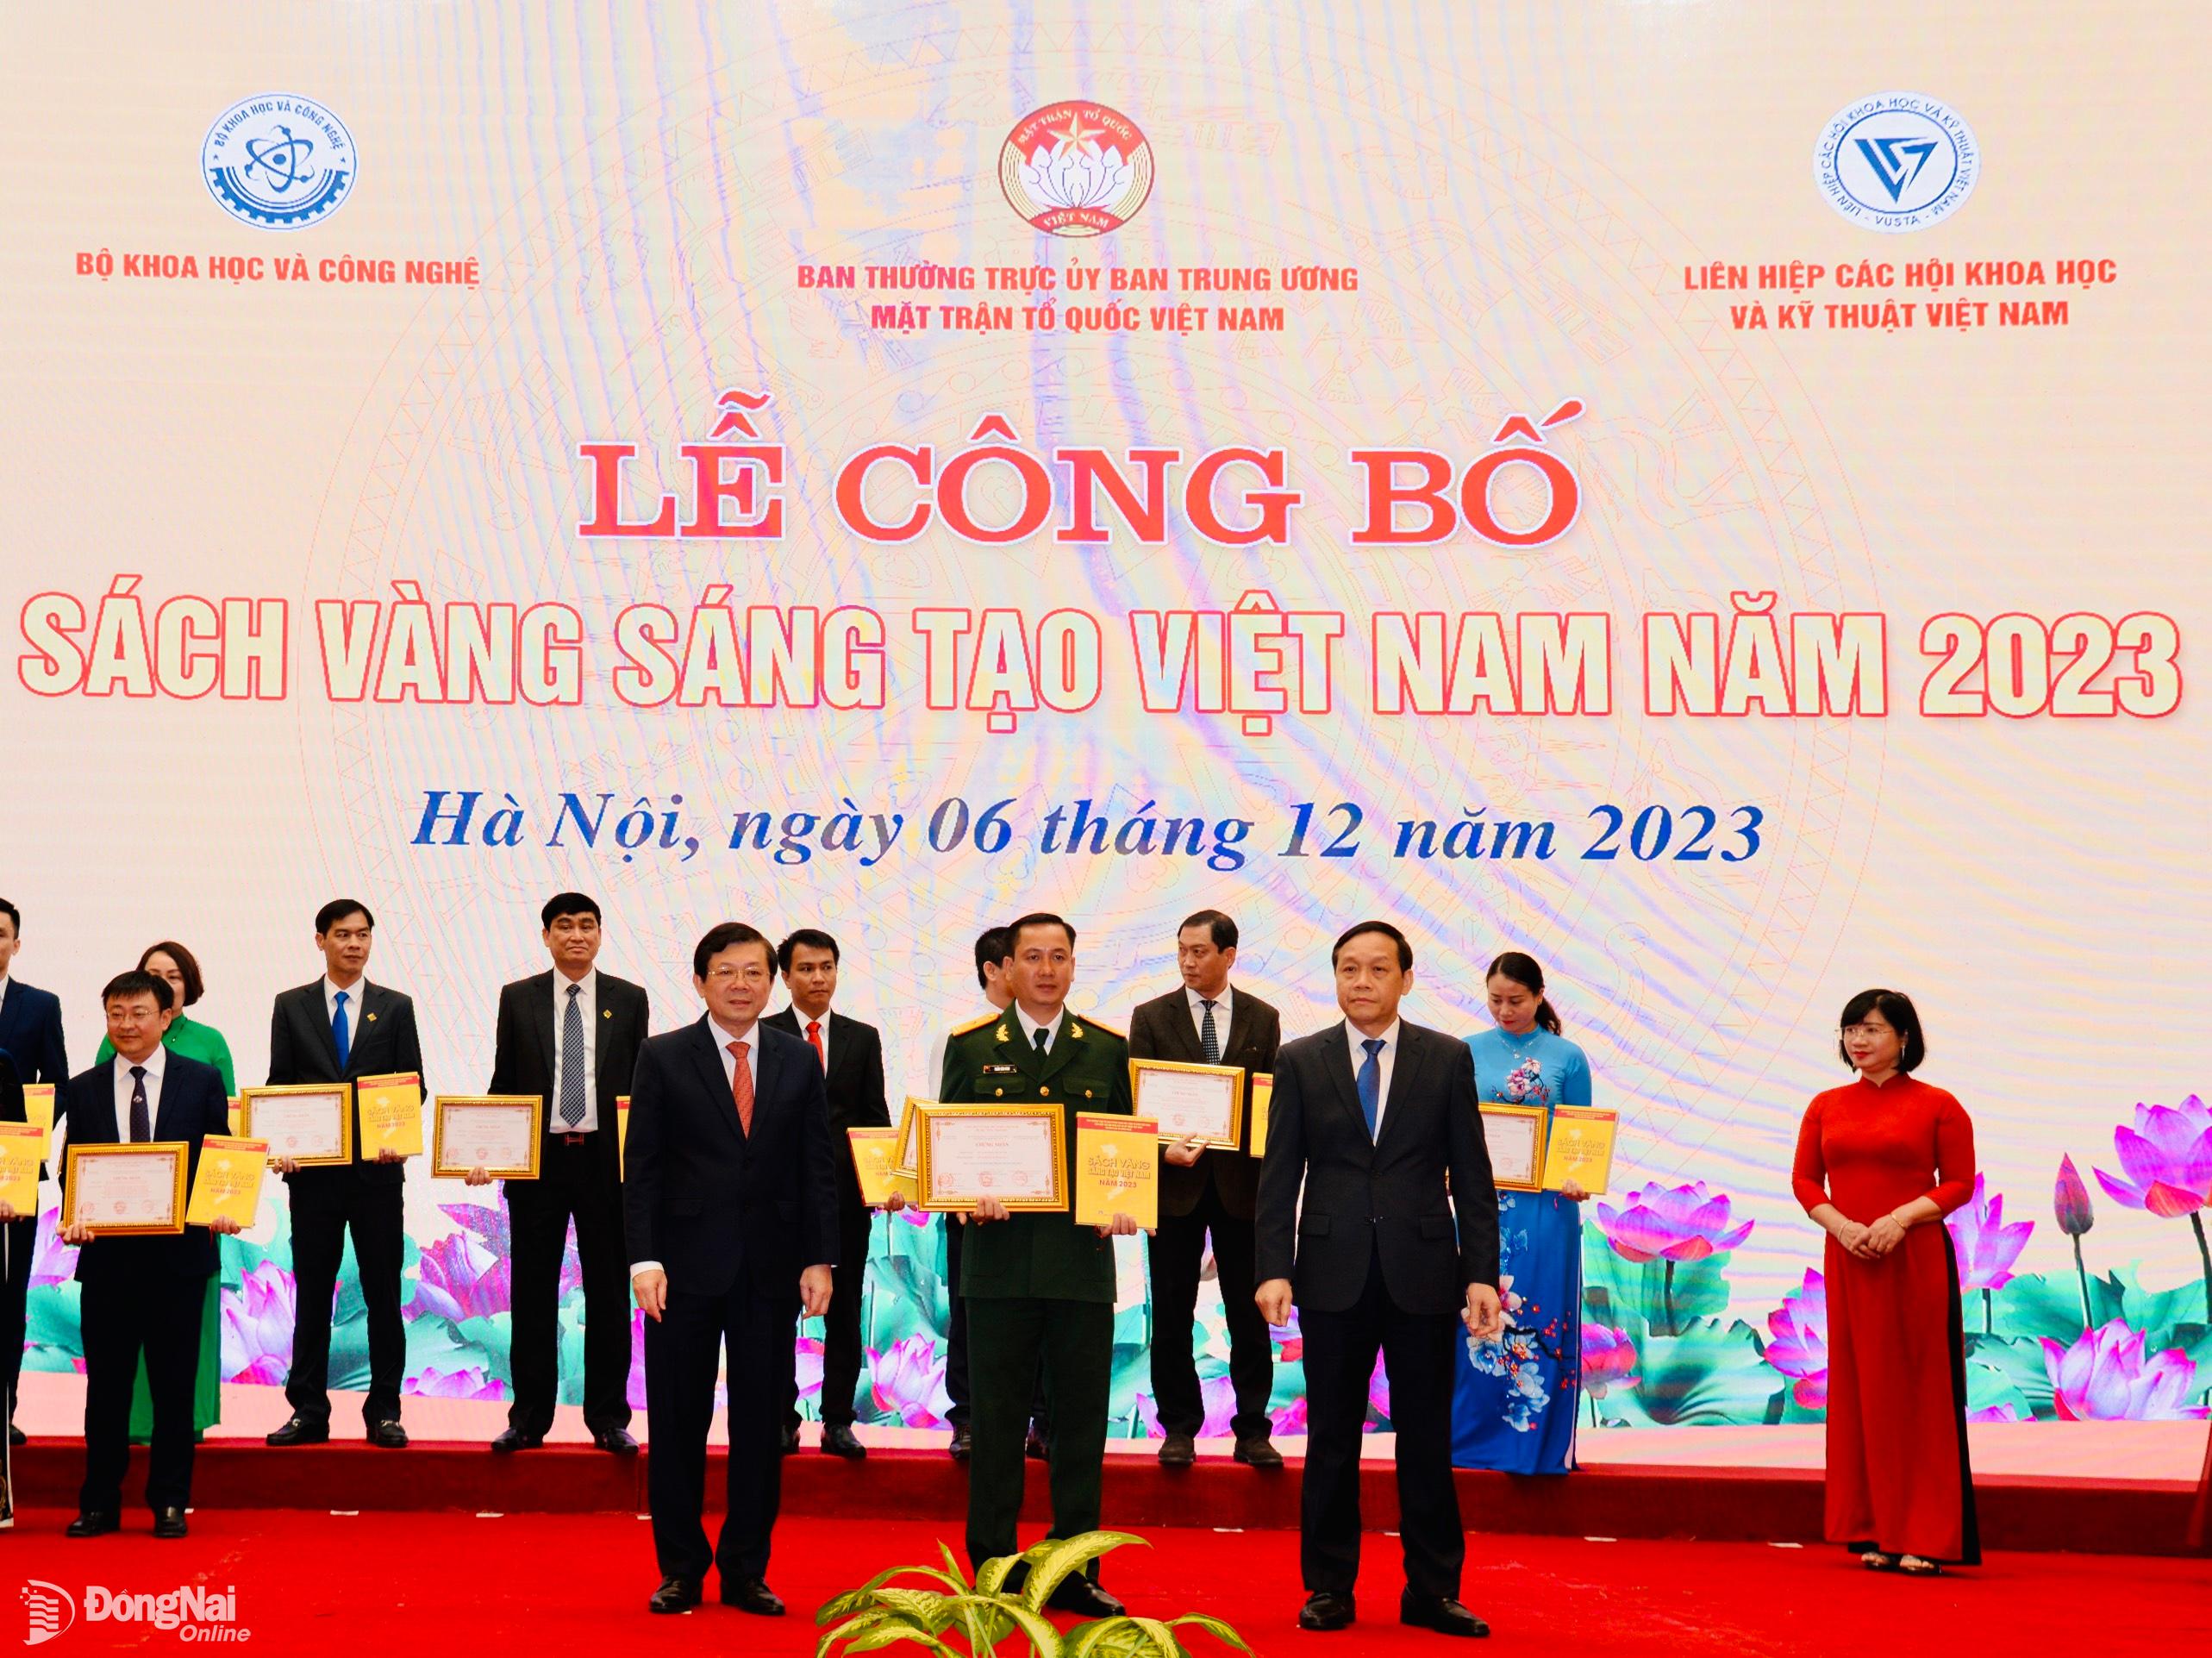 Tác giả Trần Văn Vinh (Bộ Chi huy quân sự tỉnh) nhận chứng nhận giải pháp được tin trong Sách vàng Sáng tạo Việt Nam năm 2023.